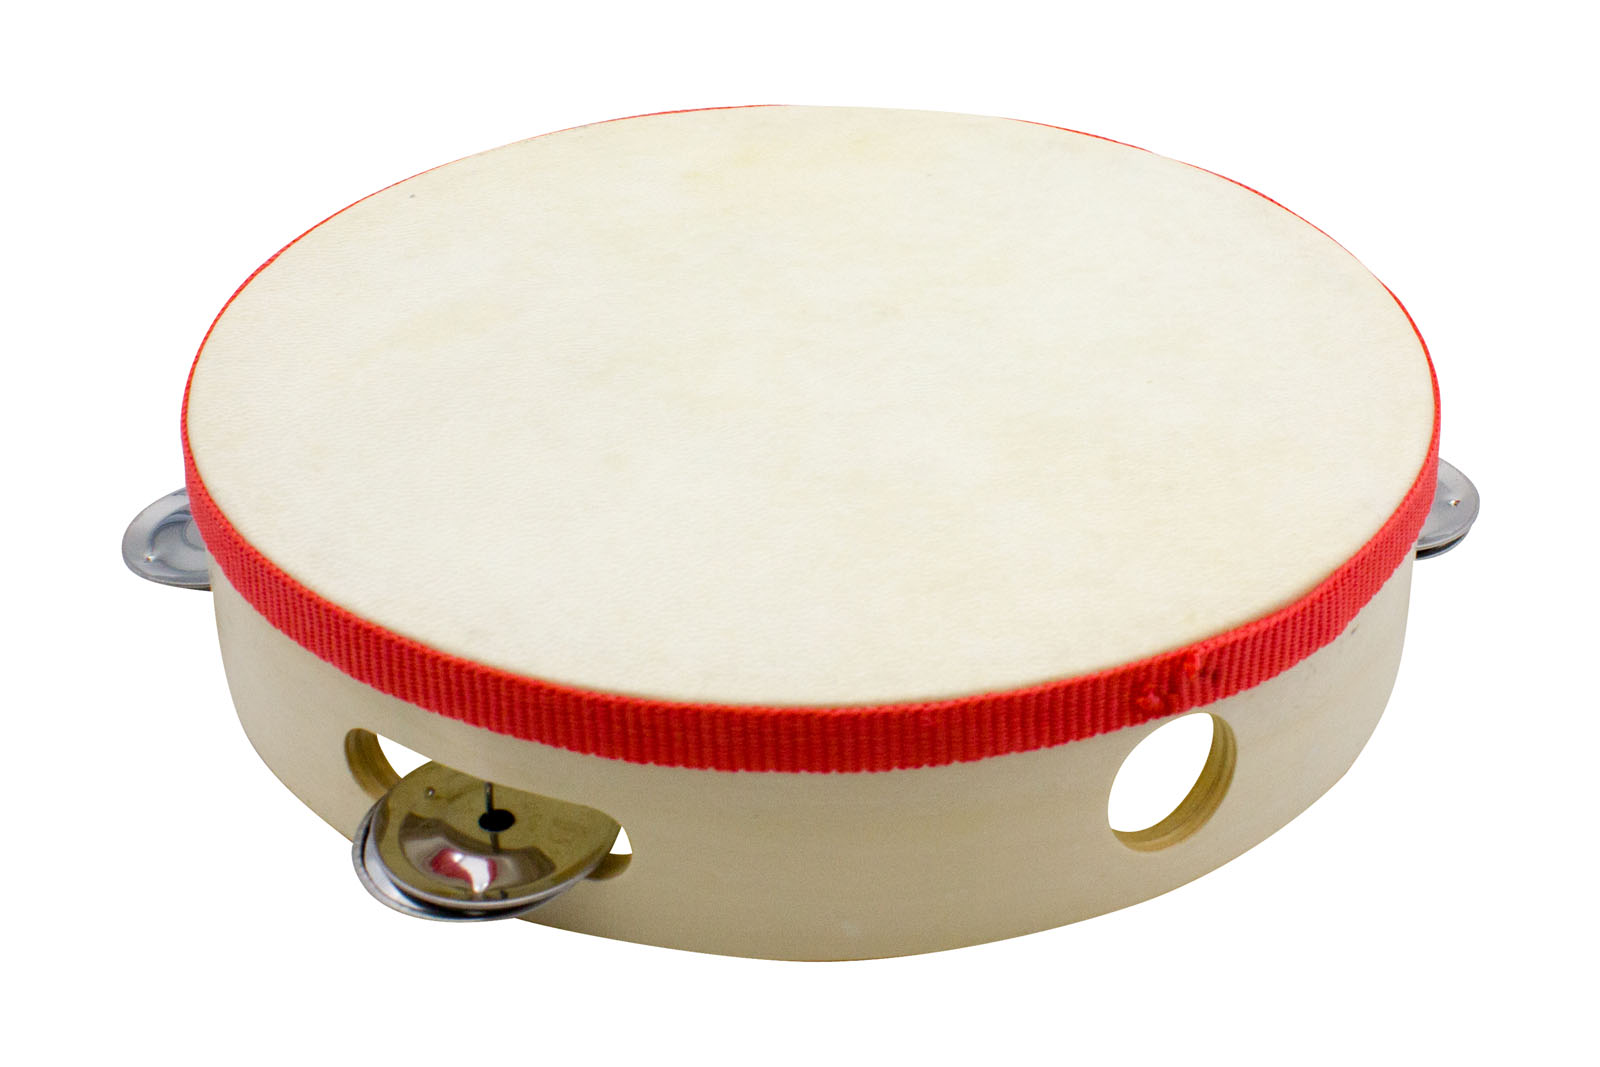 Tamburin Handtrommel Musikinstrument für Kinder D: 20 cm aus Holz mit 5 Schellen - 3833